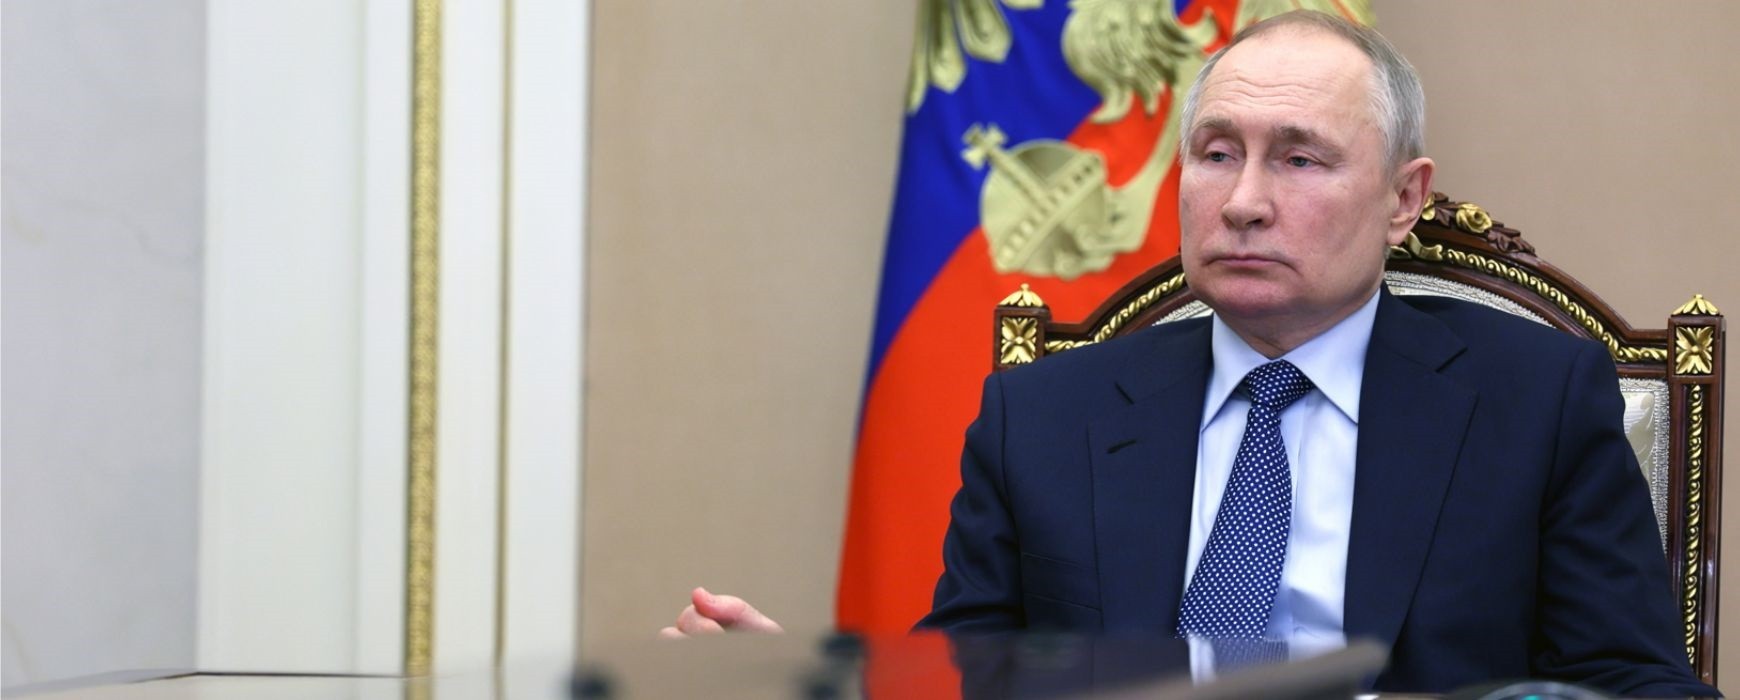 Οι φοβίες του Πούτιν και οι ανησυχίες για την ψυχική υγεία του